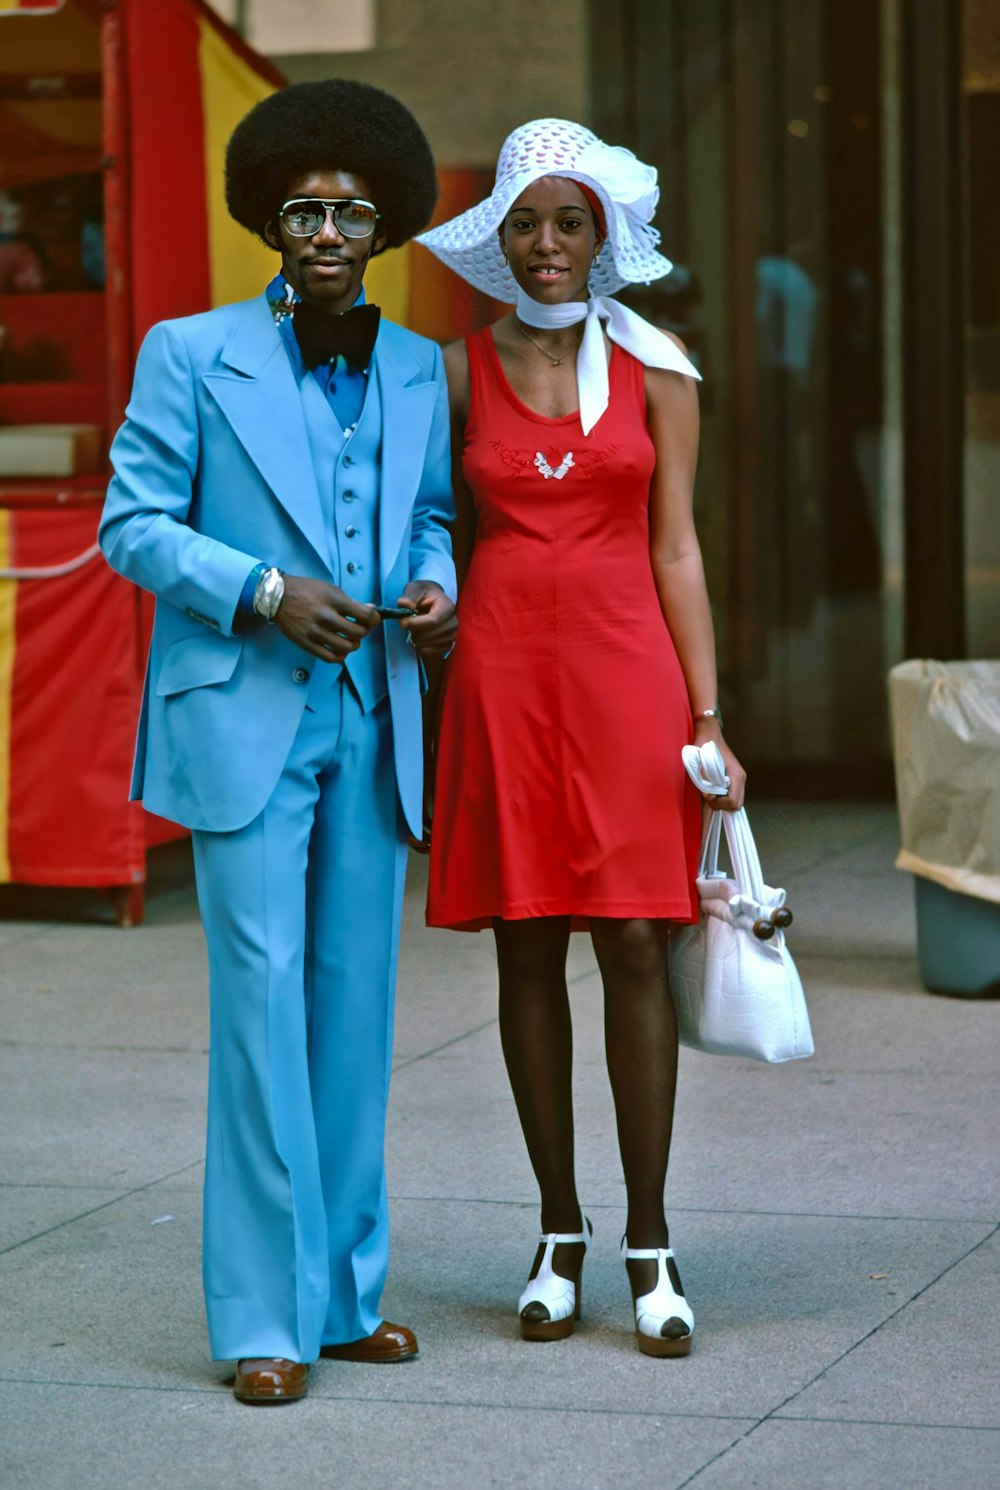 Un uomo e una donna vestiti di blu e rosso